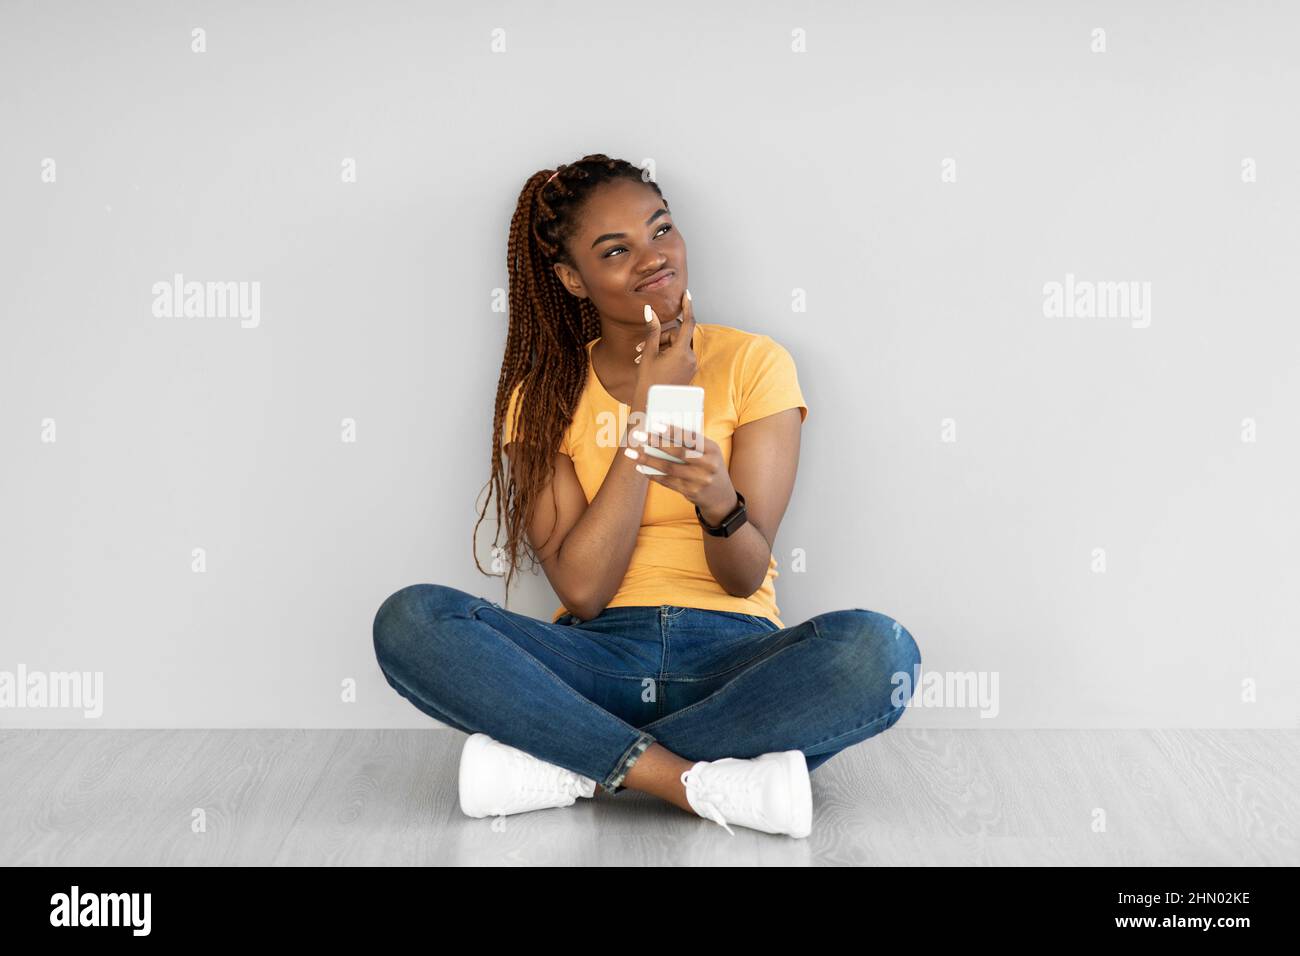 Nachdenkliche junge schwarze Frau, die mit gekreuzten Beinen auf dem Boden sitzt, Smartphone benutzt und über etwas gegen die graue Wand nachdenkt Stockfoto